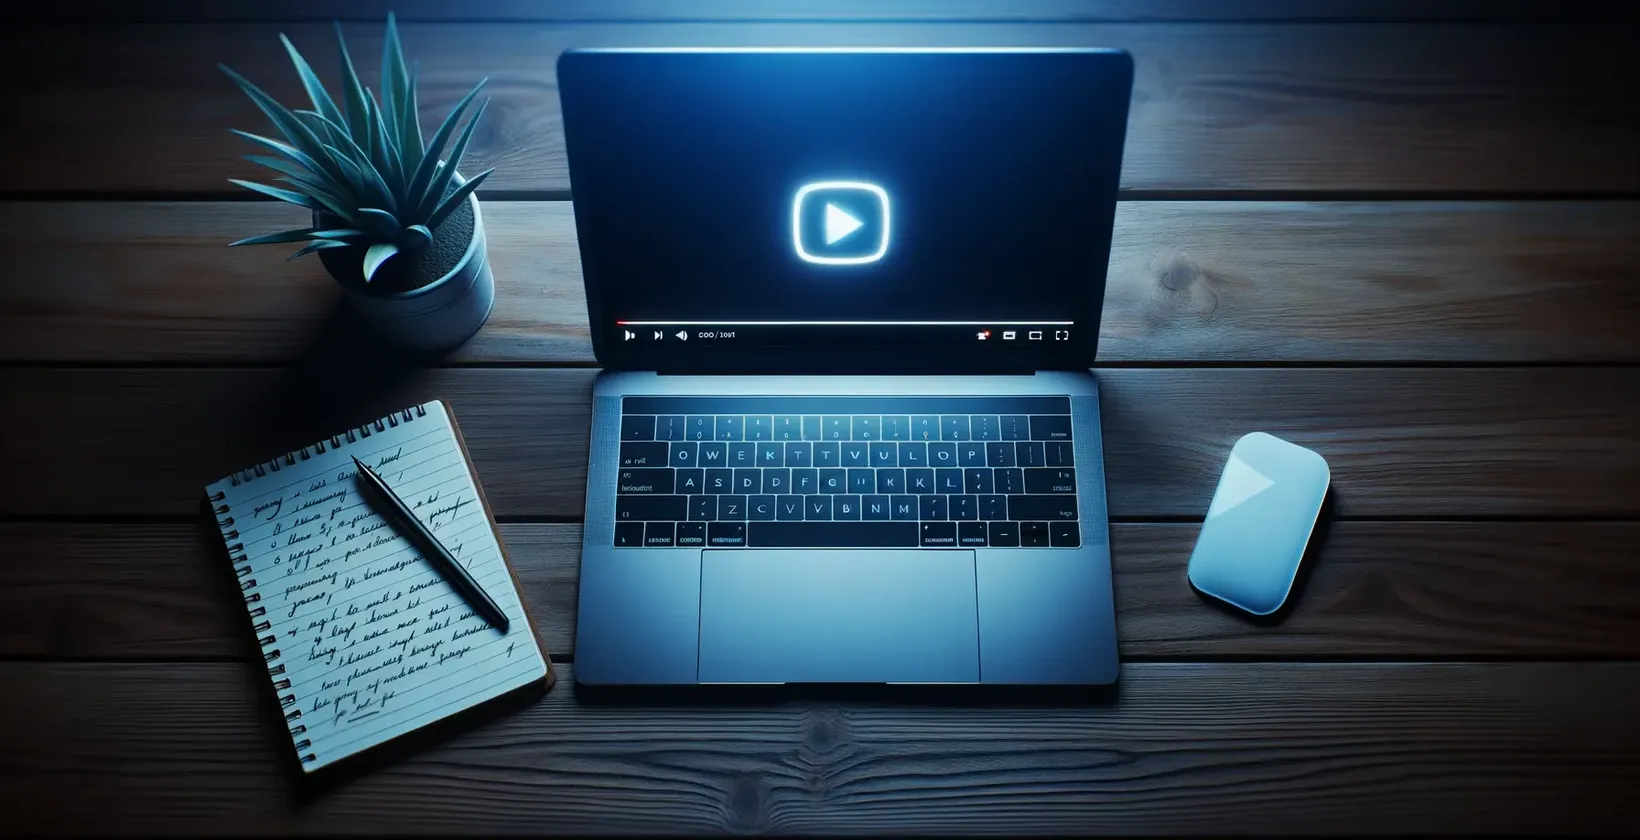 Adaugă text la video cu KineMaster scena arată un laptop cu pictograma de redare pe laptop